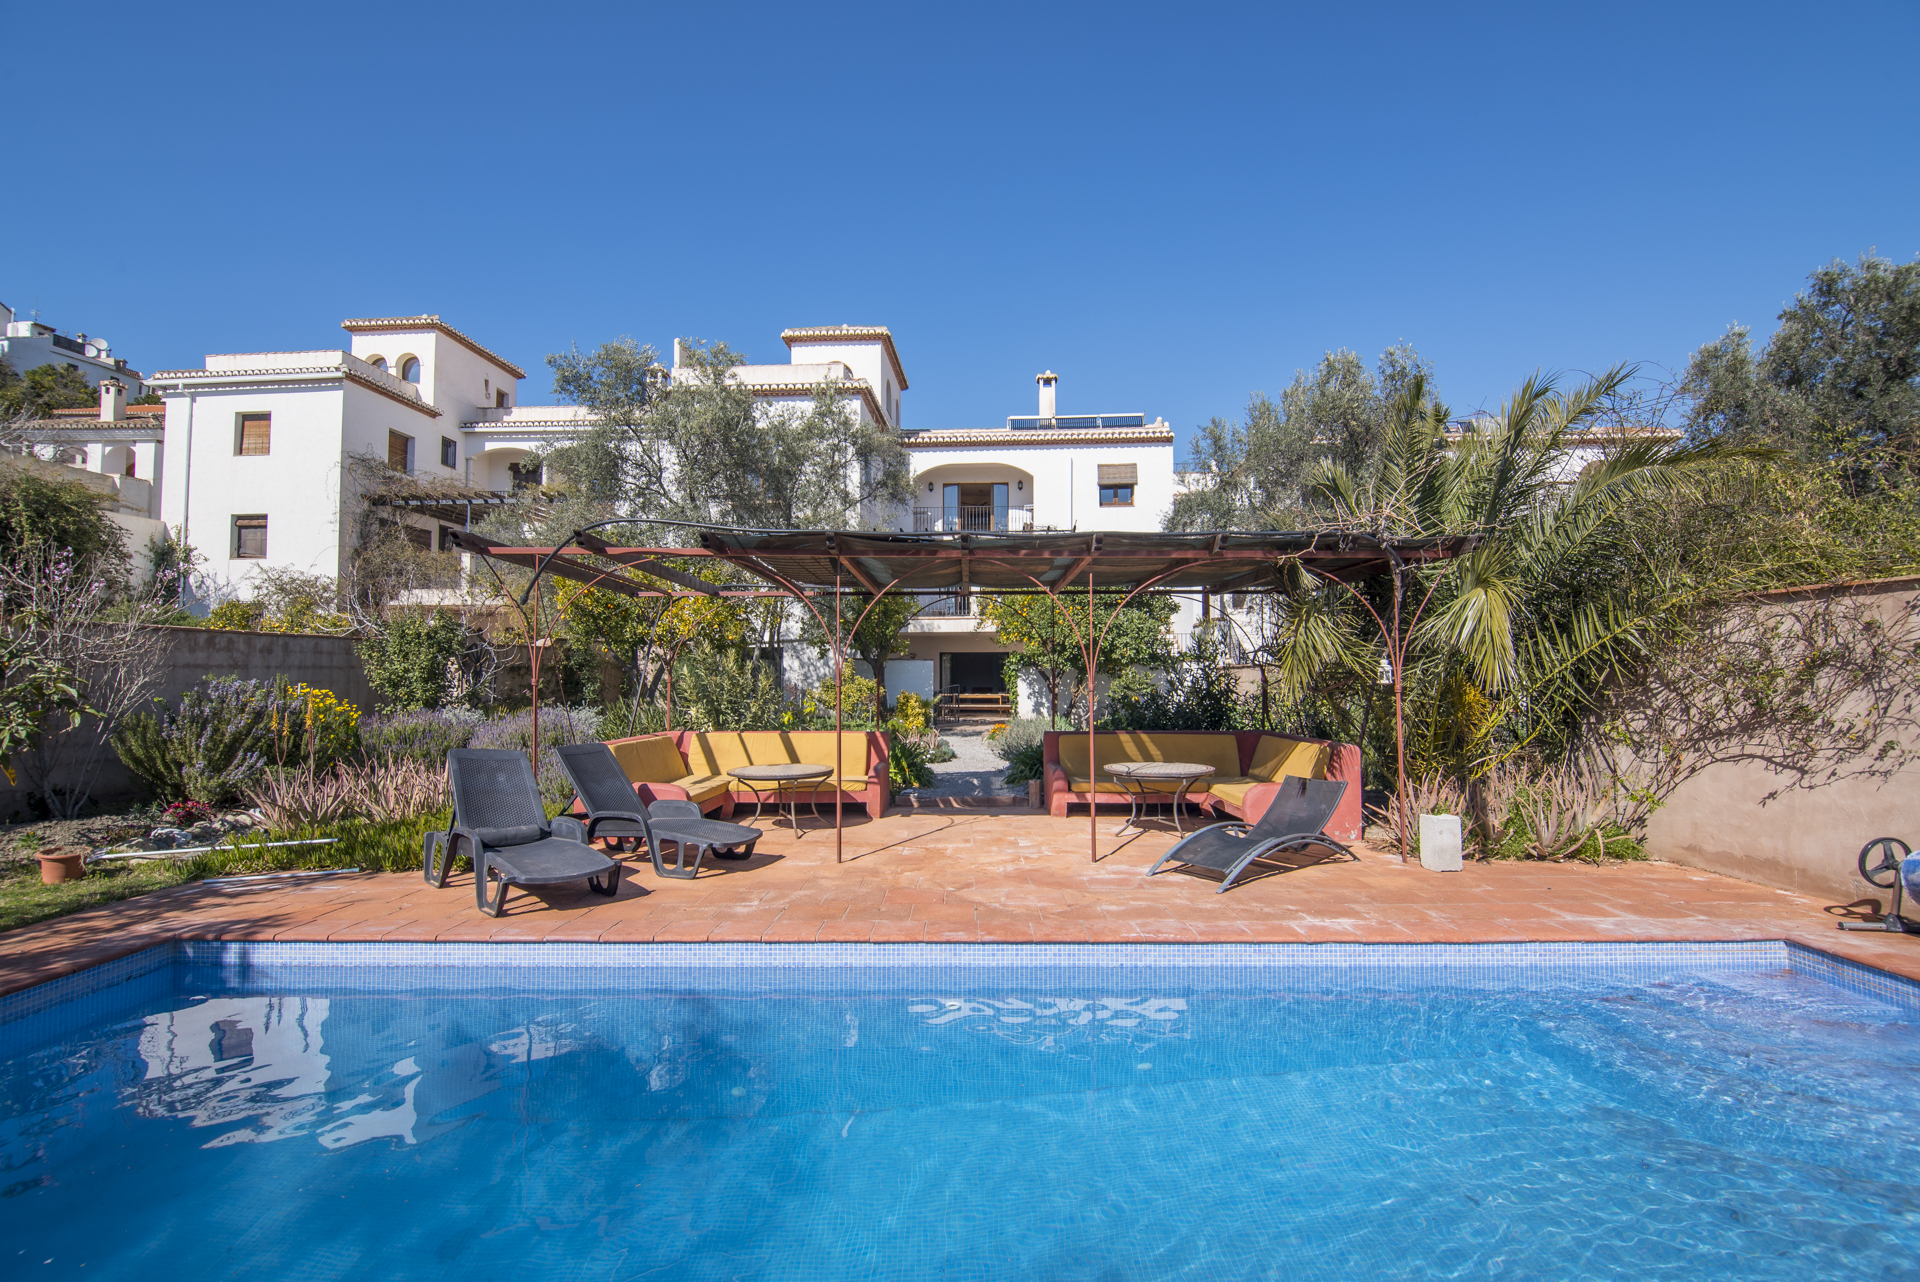 Casa Antonio Villa - villa, terrace and pool